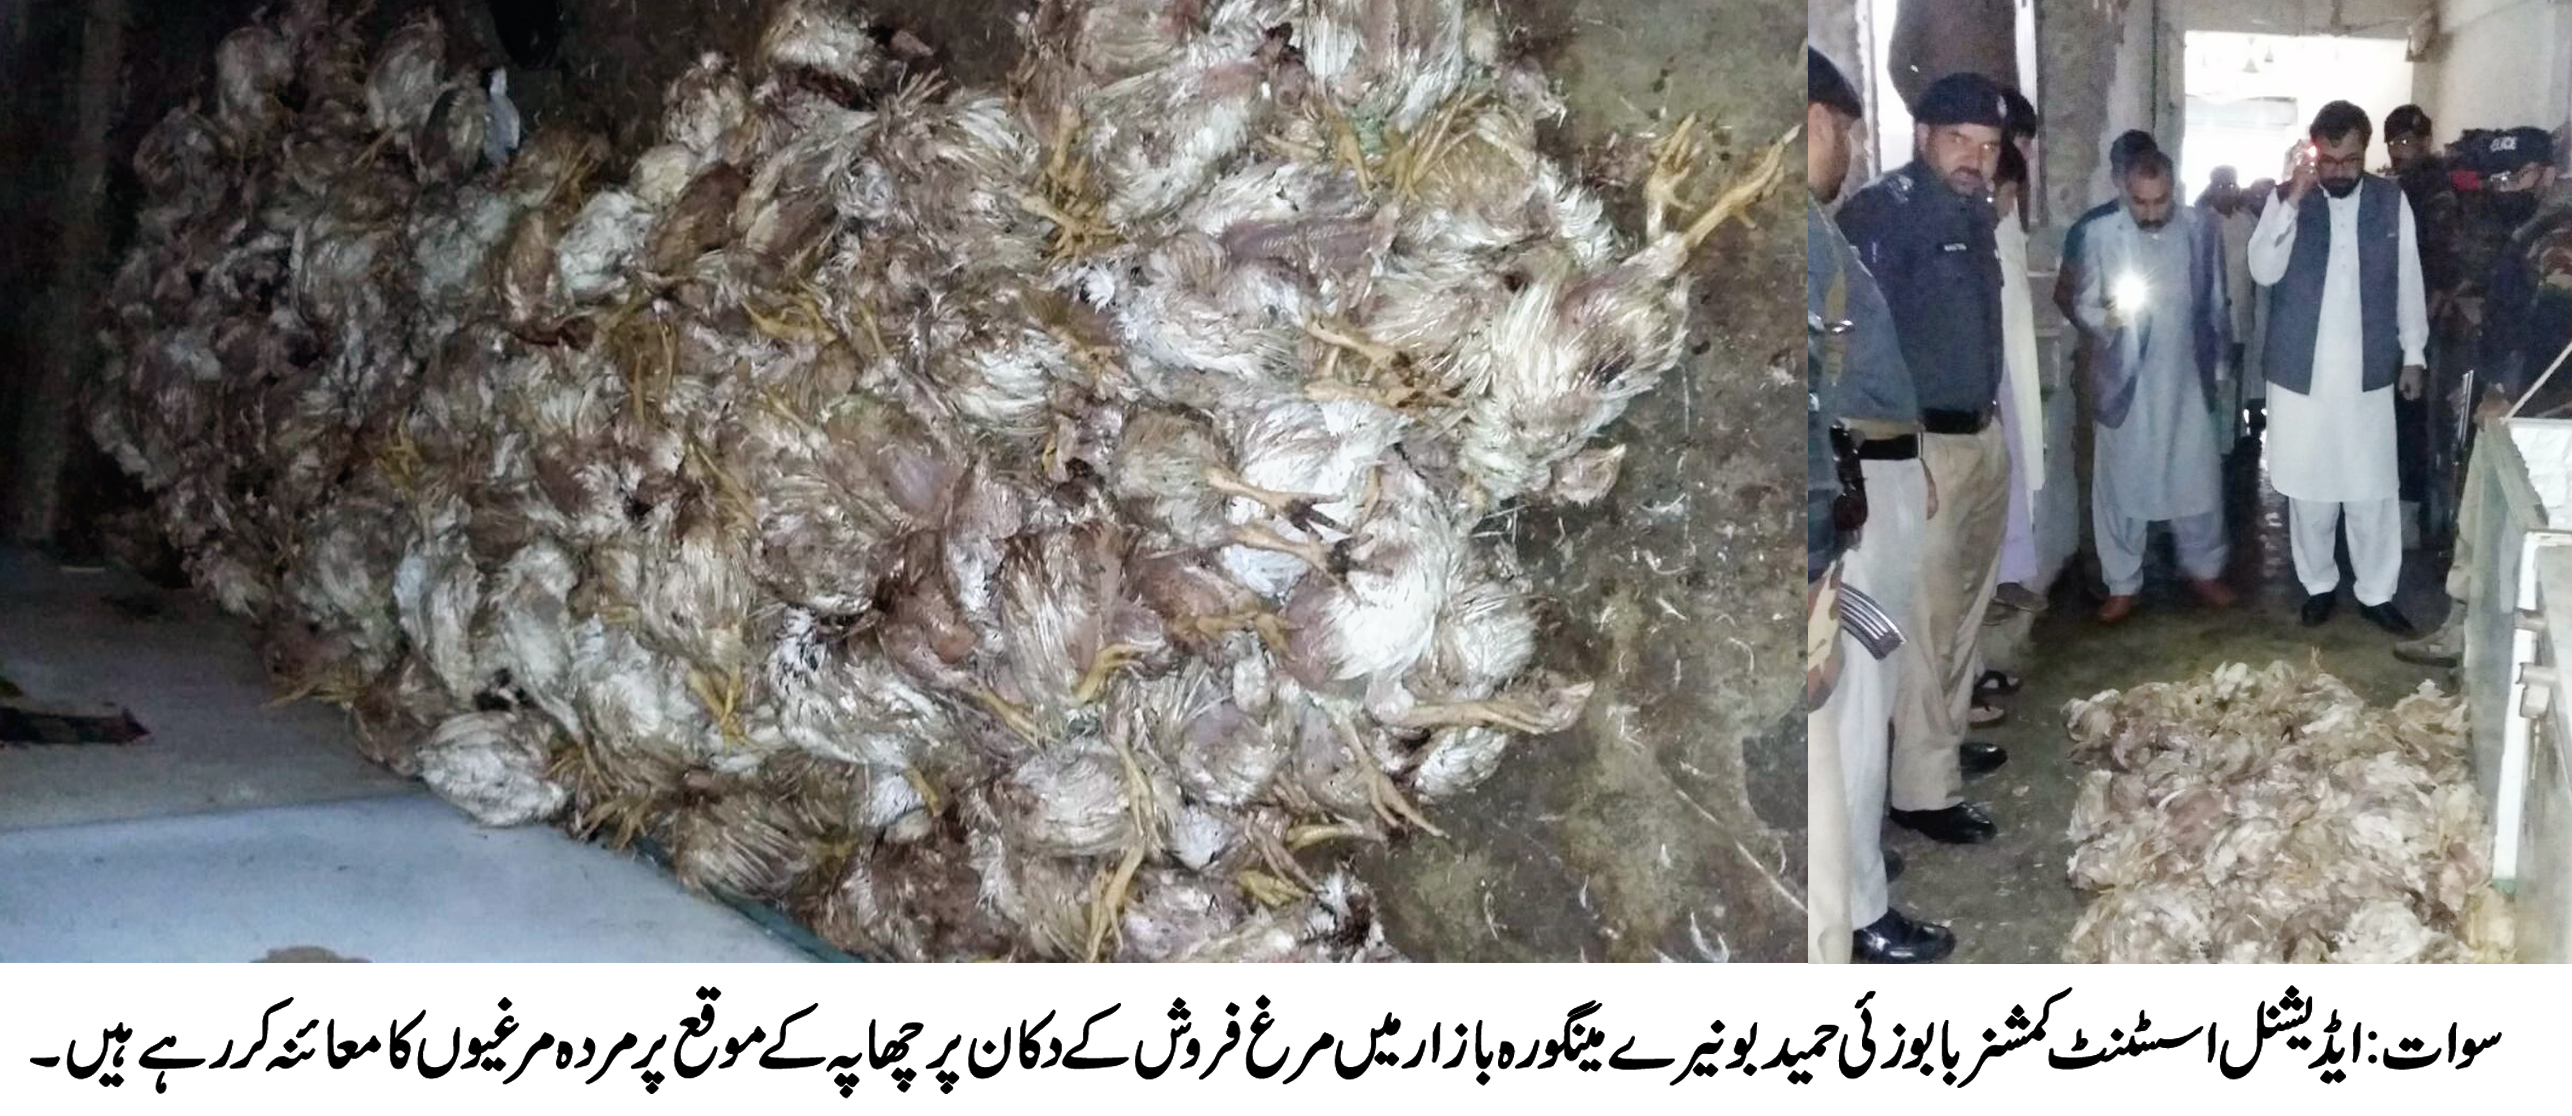 ضلعی انتظامیہ کی بڑی کاروائی ، مینگورہ شہر میں 300سے زائد مضر صحت مردہ مرغیاں برامد 